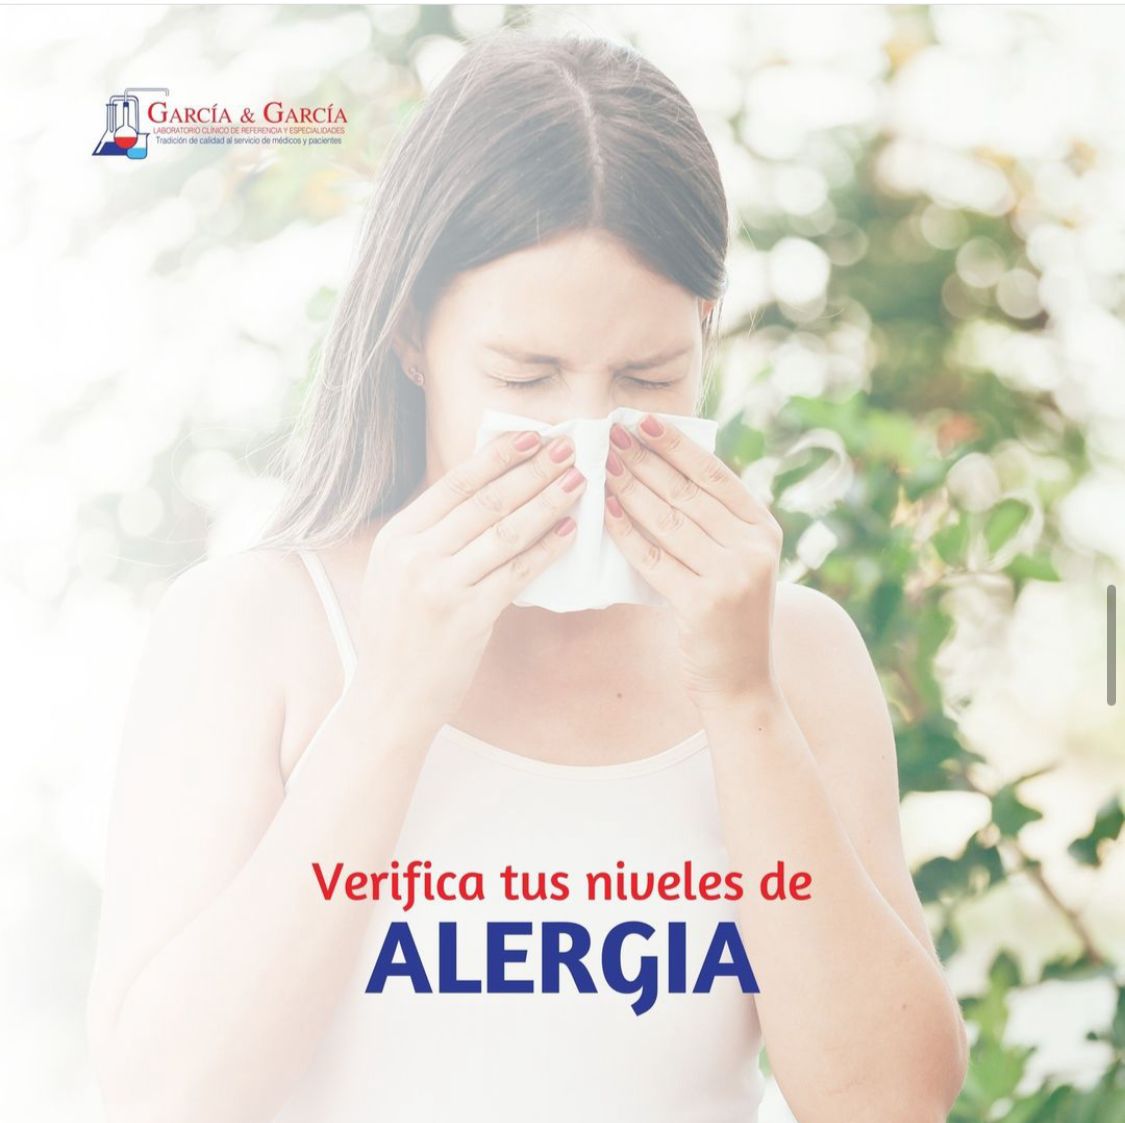 Verifica tus niveles de alergia